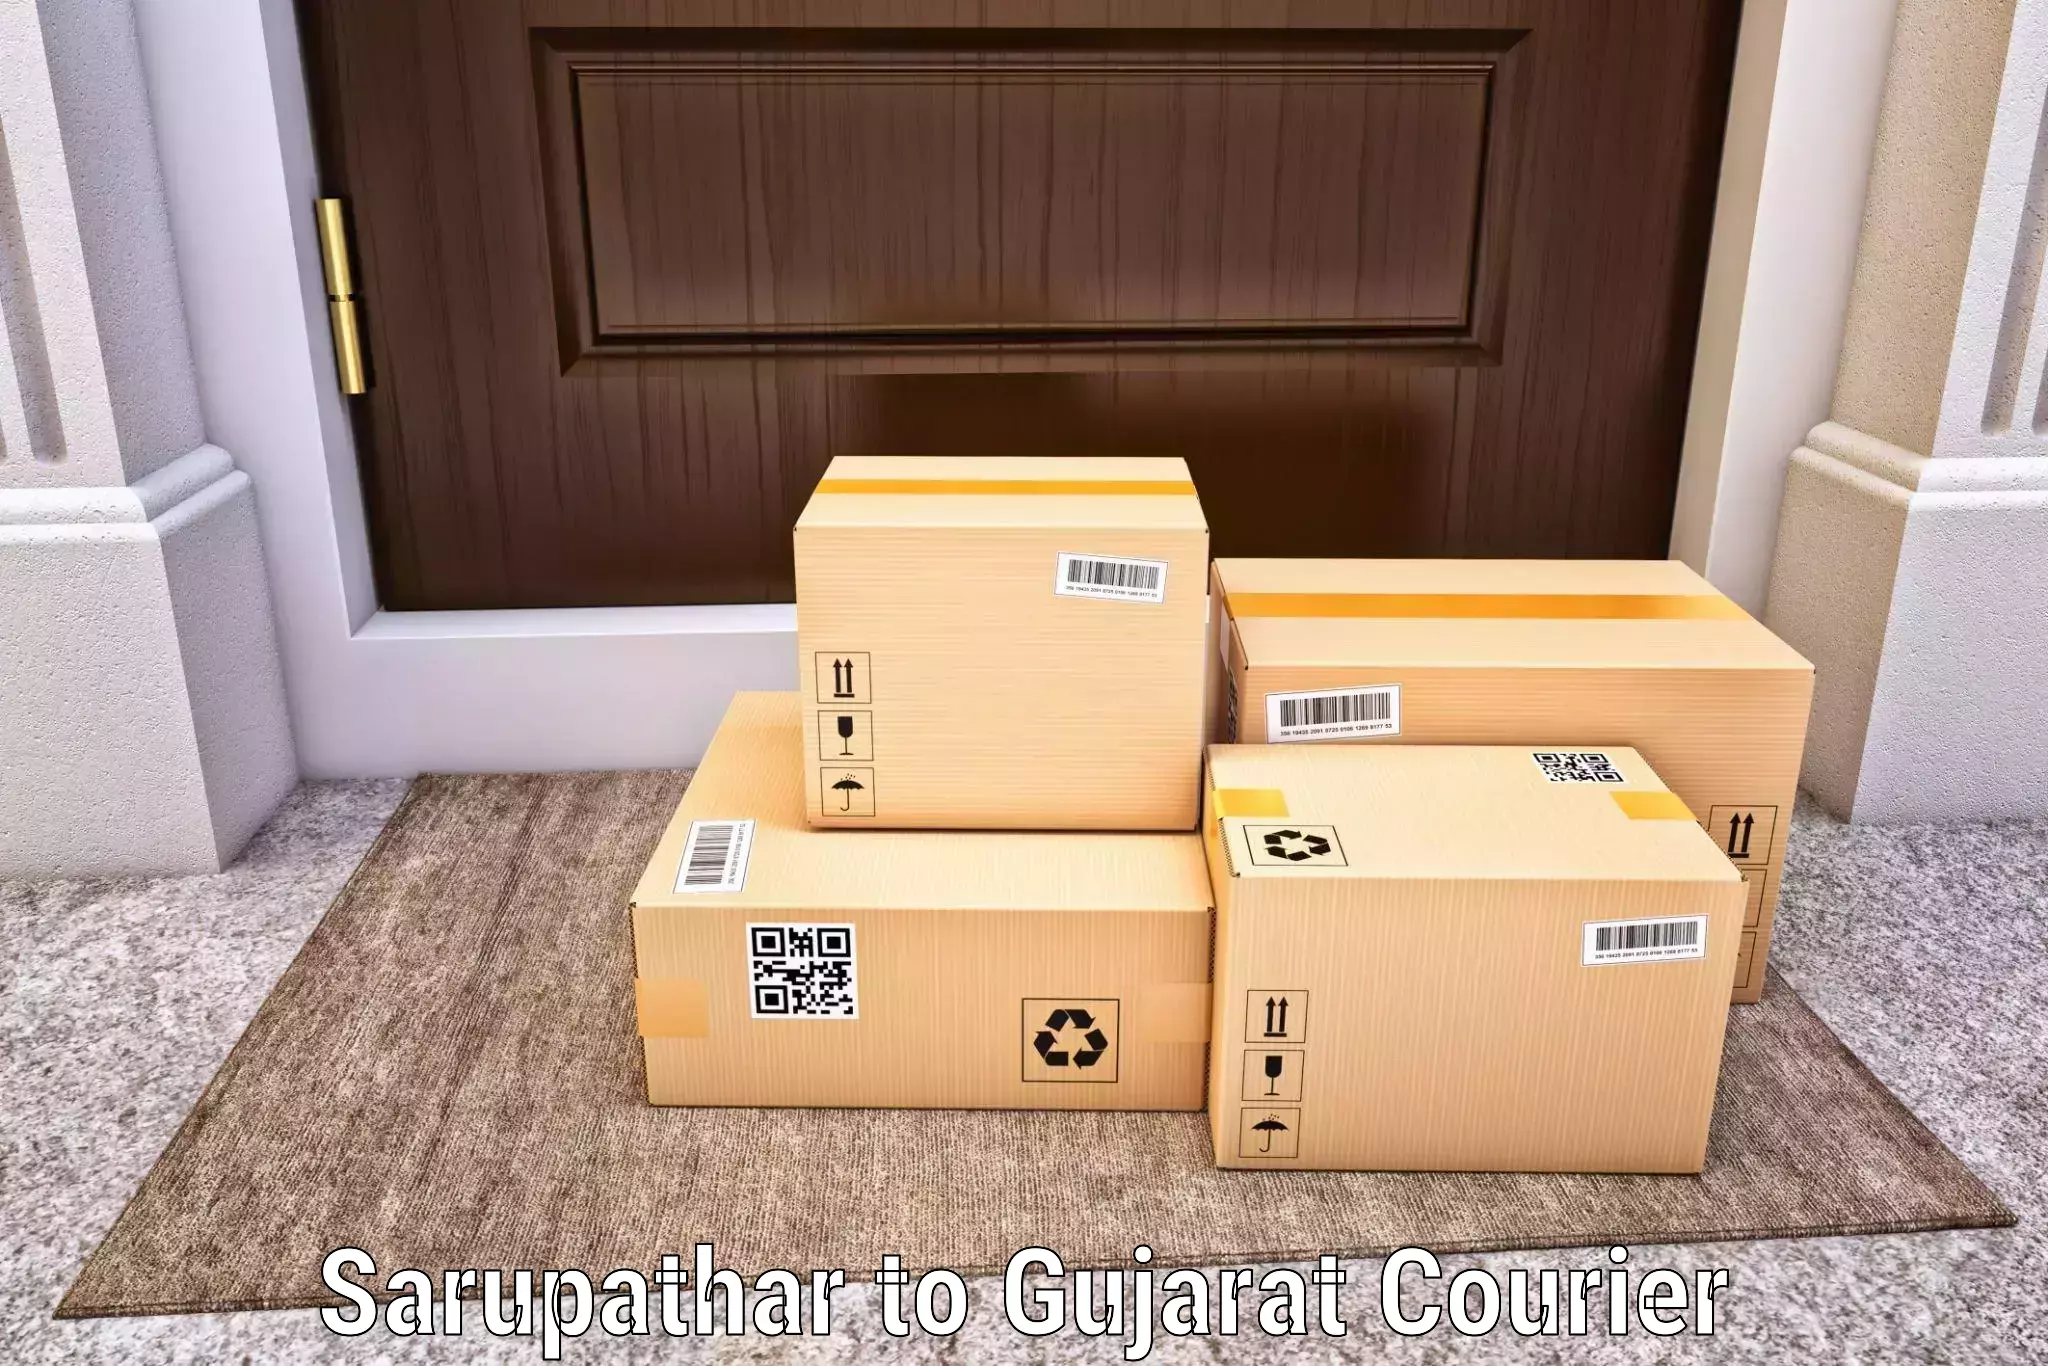 High-capacity shipping options Sarupathar to Navsari